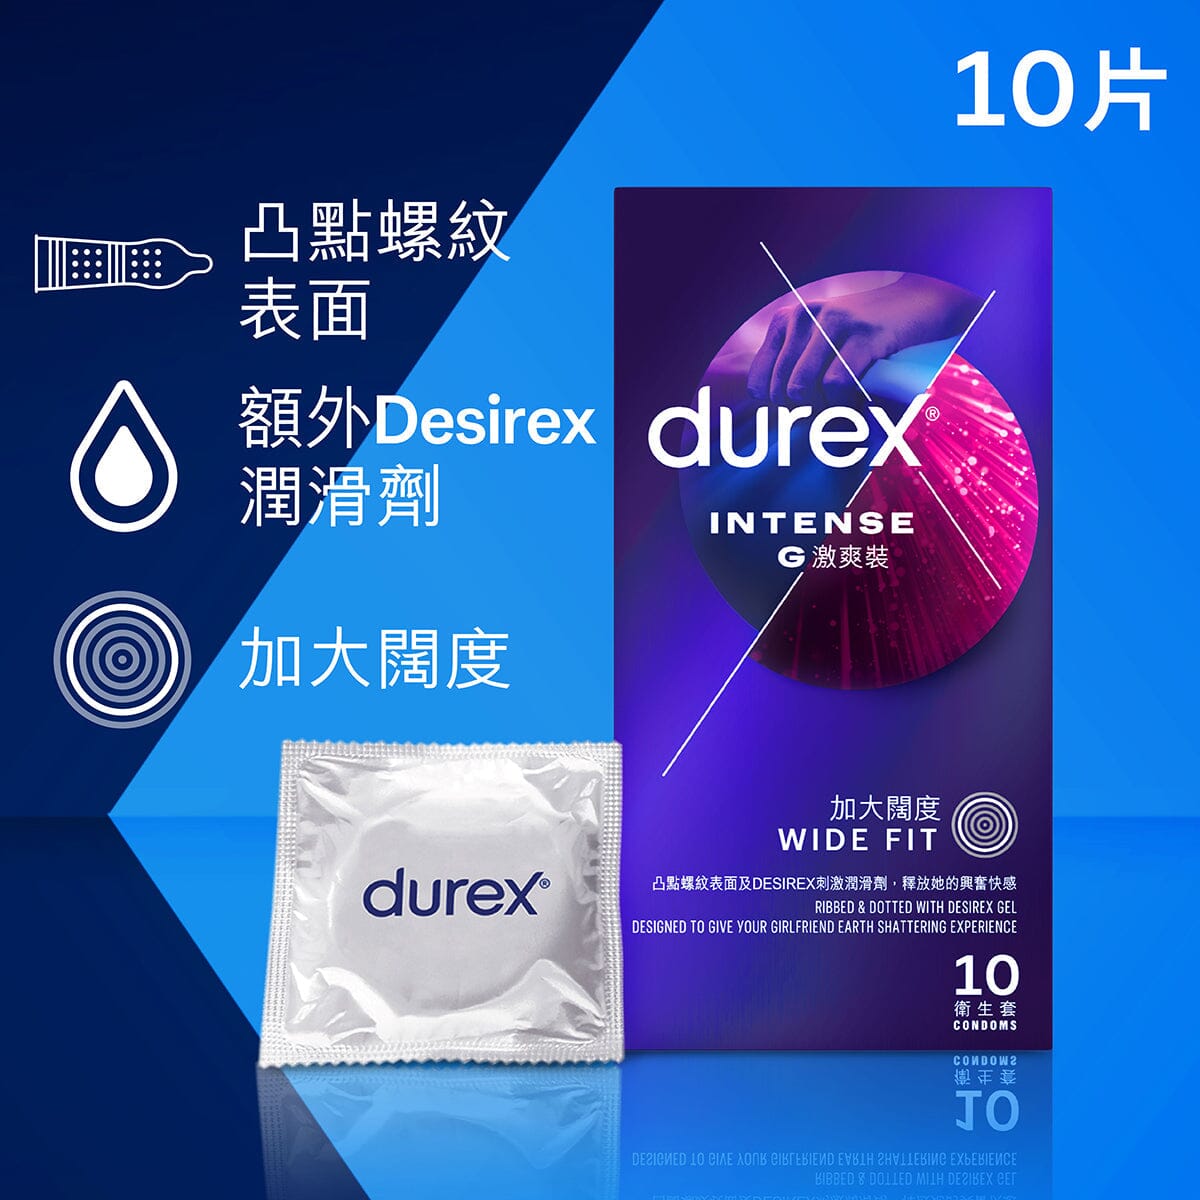 DUREX 杜蕾斯 G 激爽裝安全套 10 片裝 購買